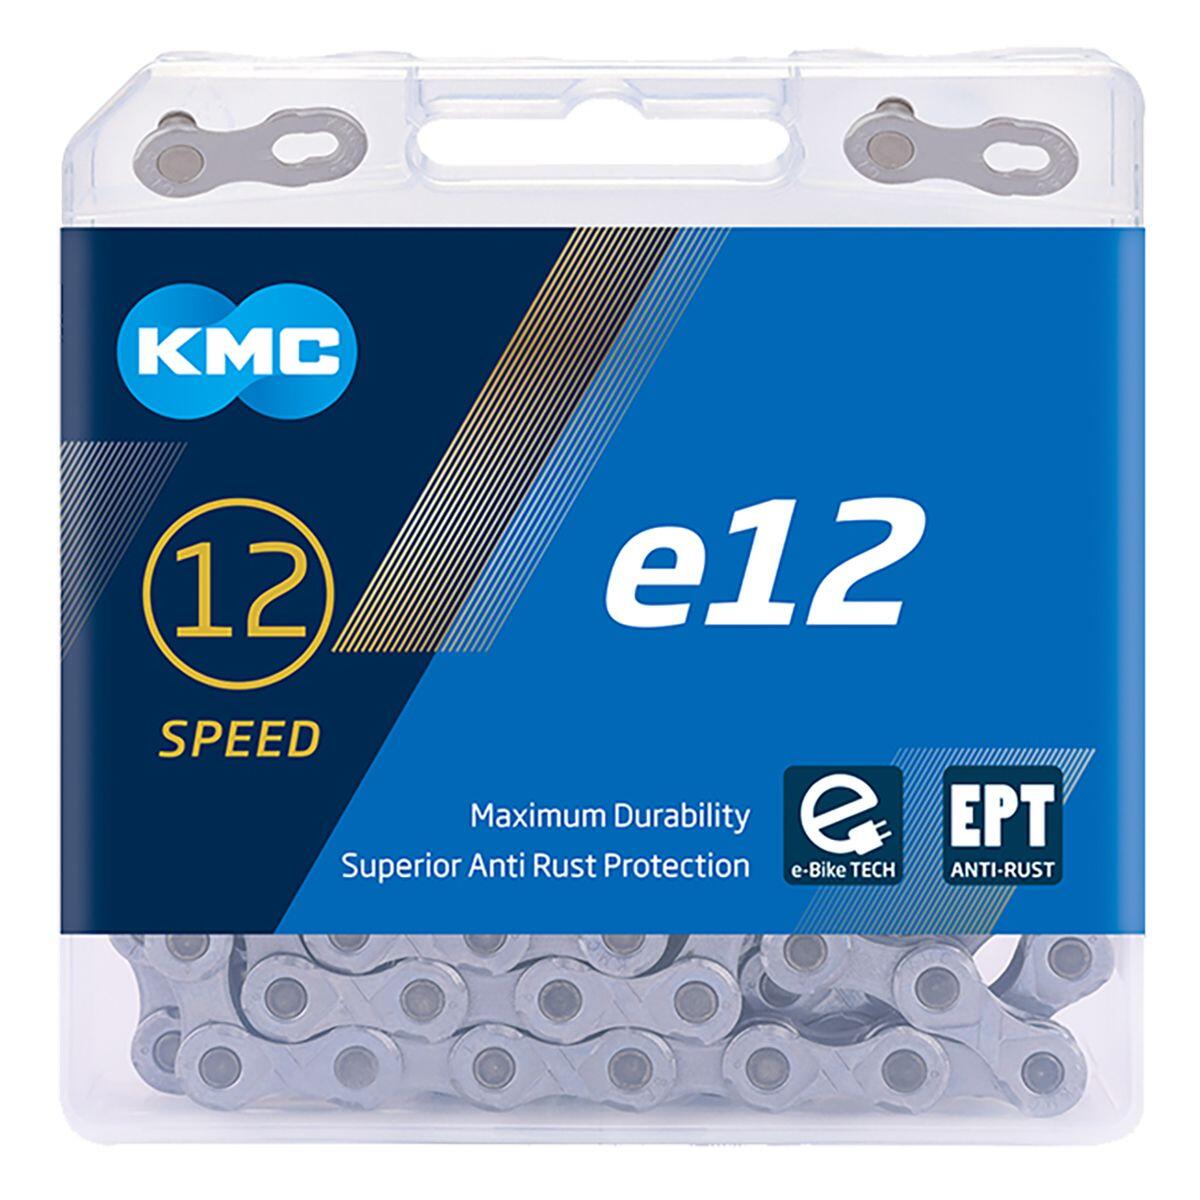 KMC E12 EPT E-Bike Chain 1/5